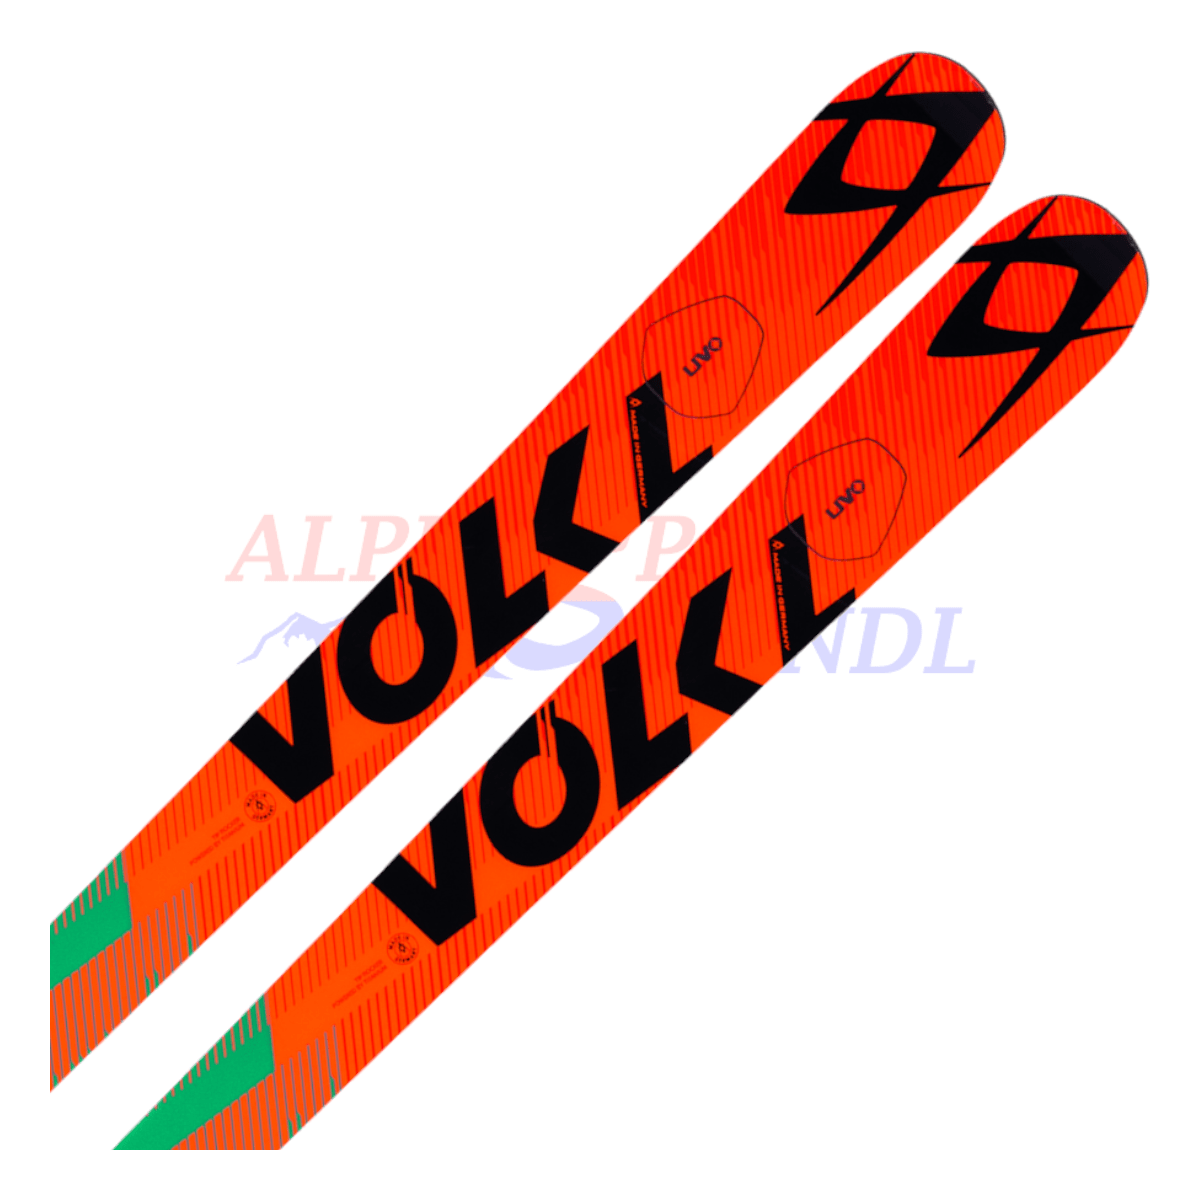 Völkl Racetiger GSR WC flat aus dem Jahre 2015/16 in der Farbe Orange, Ansicht des oberen Teils des Skis